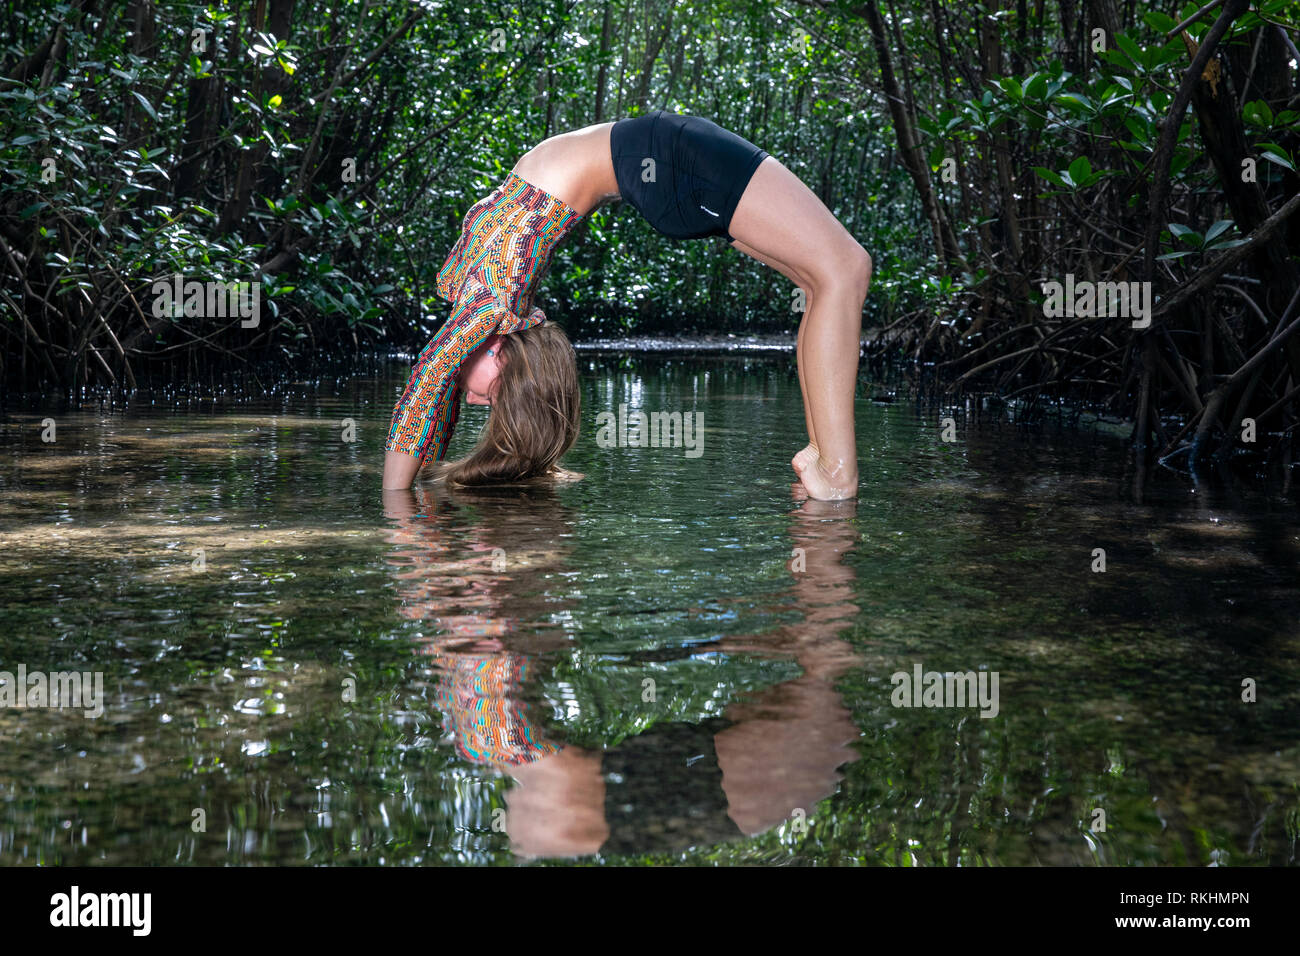 Junge Frau mit Yoga (Rad Pose-Urdhva Dhanurasana) in einer natürlichen Umgebung - Fort Lauderdale, Florida, USA Stockfoto